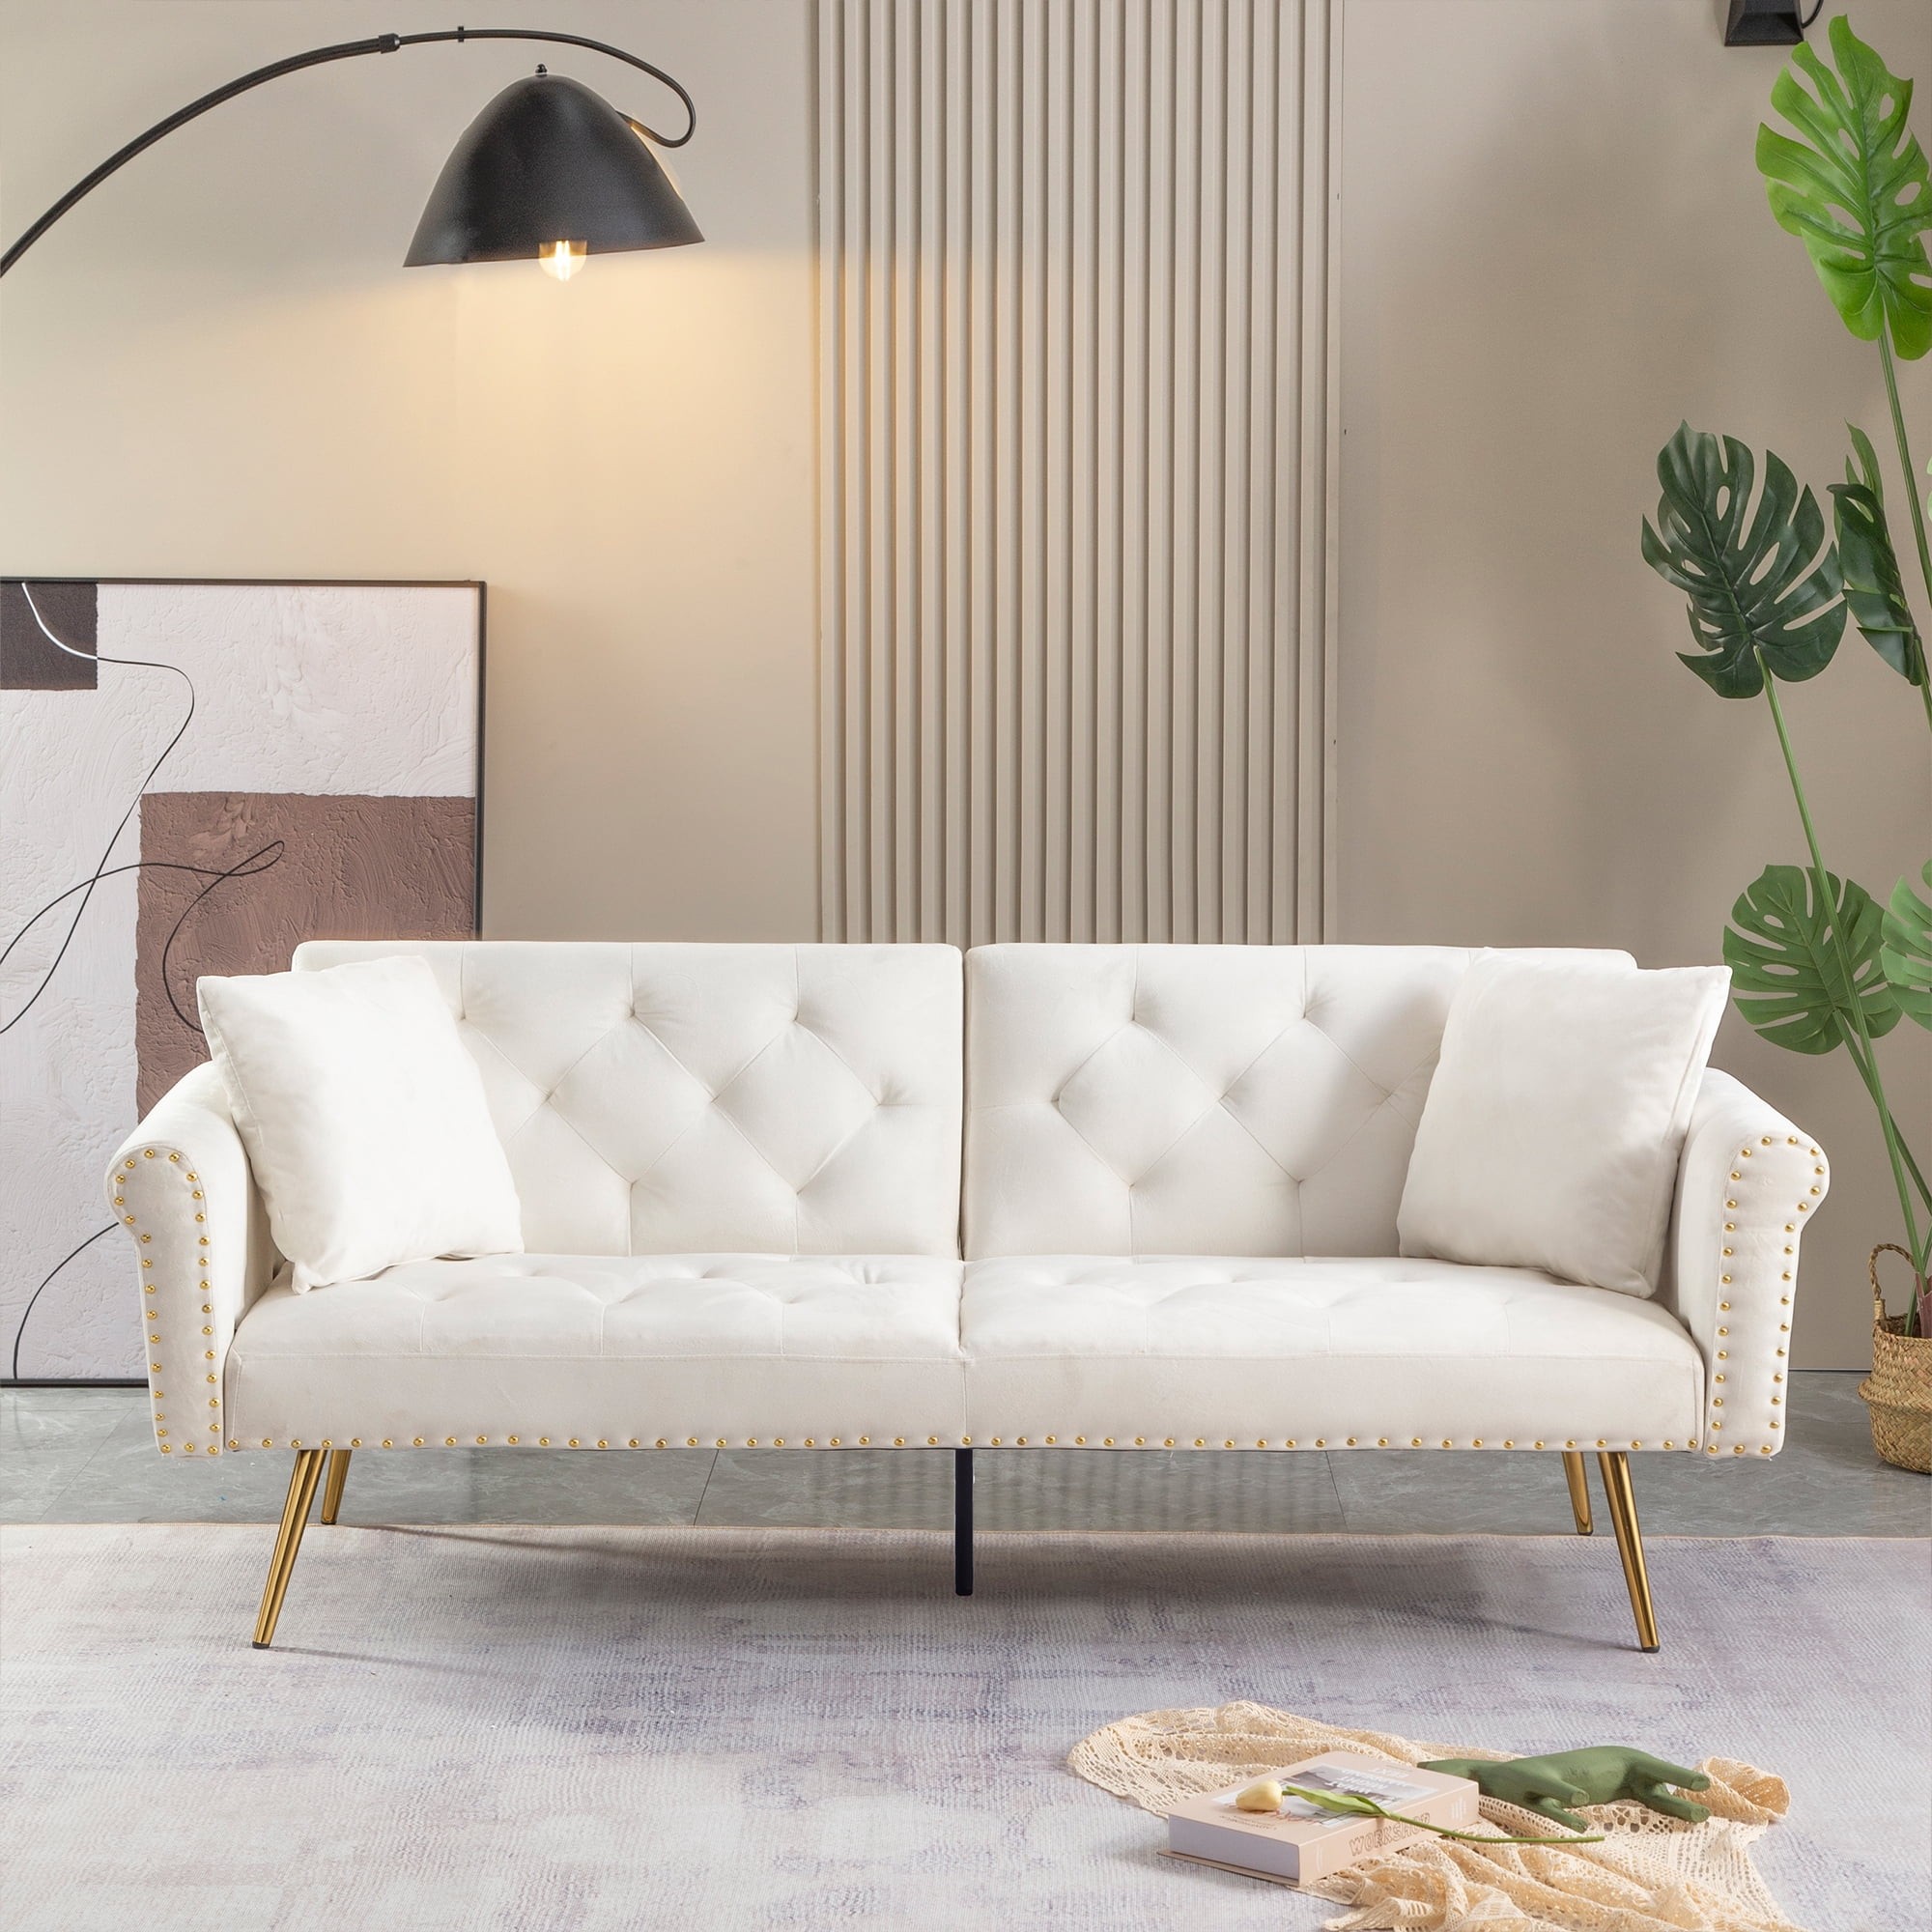 Sobaniilo 47 Small Modern Loveseat Sofa, Mid Century Linen Fabric